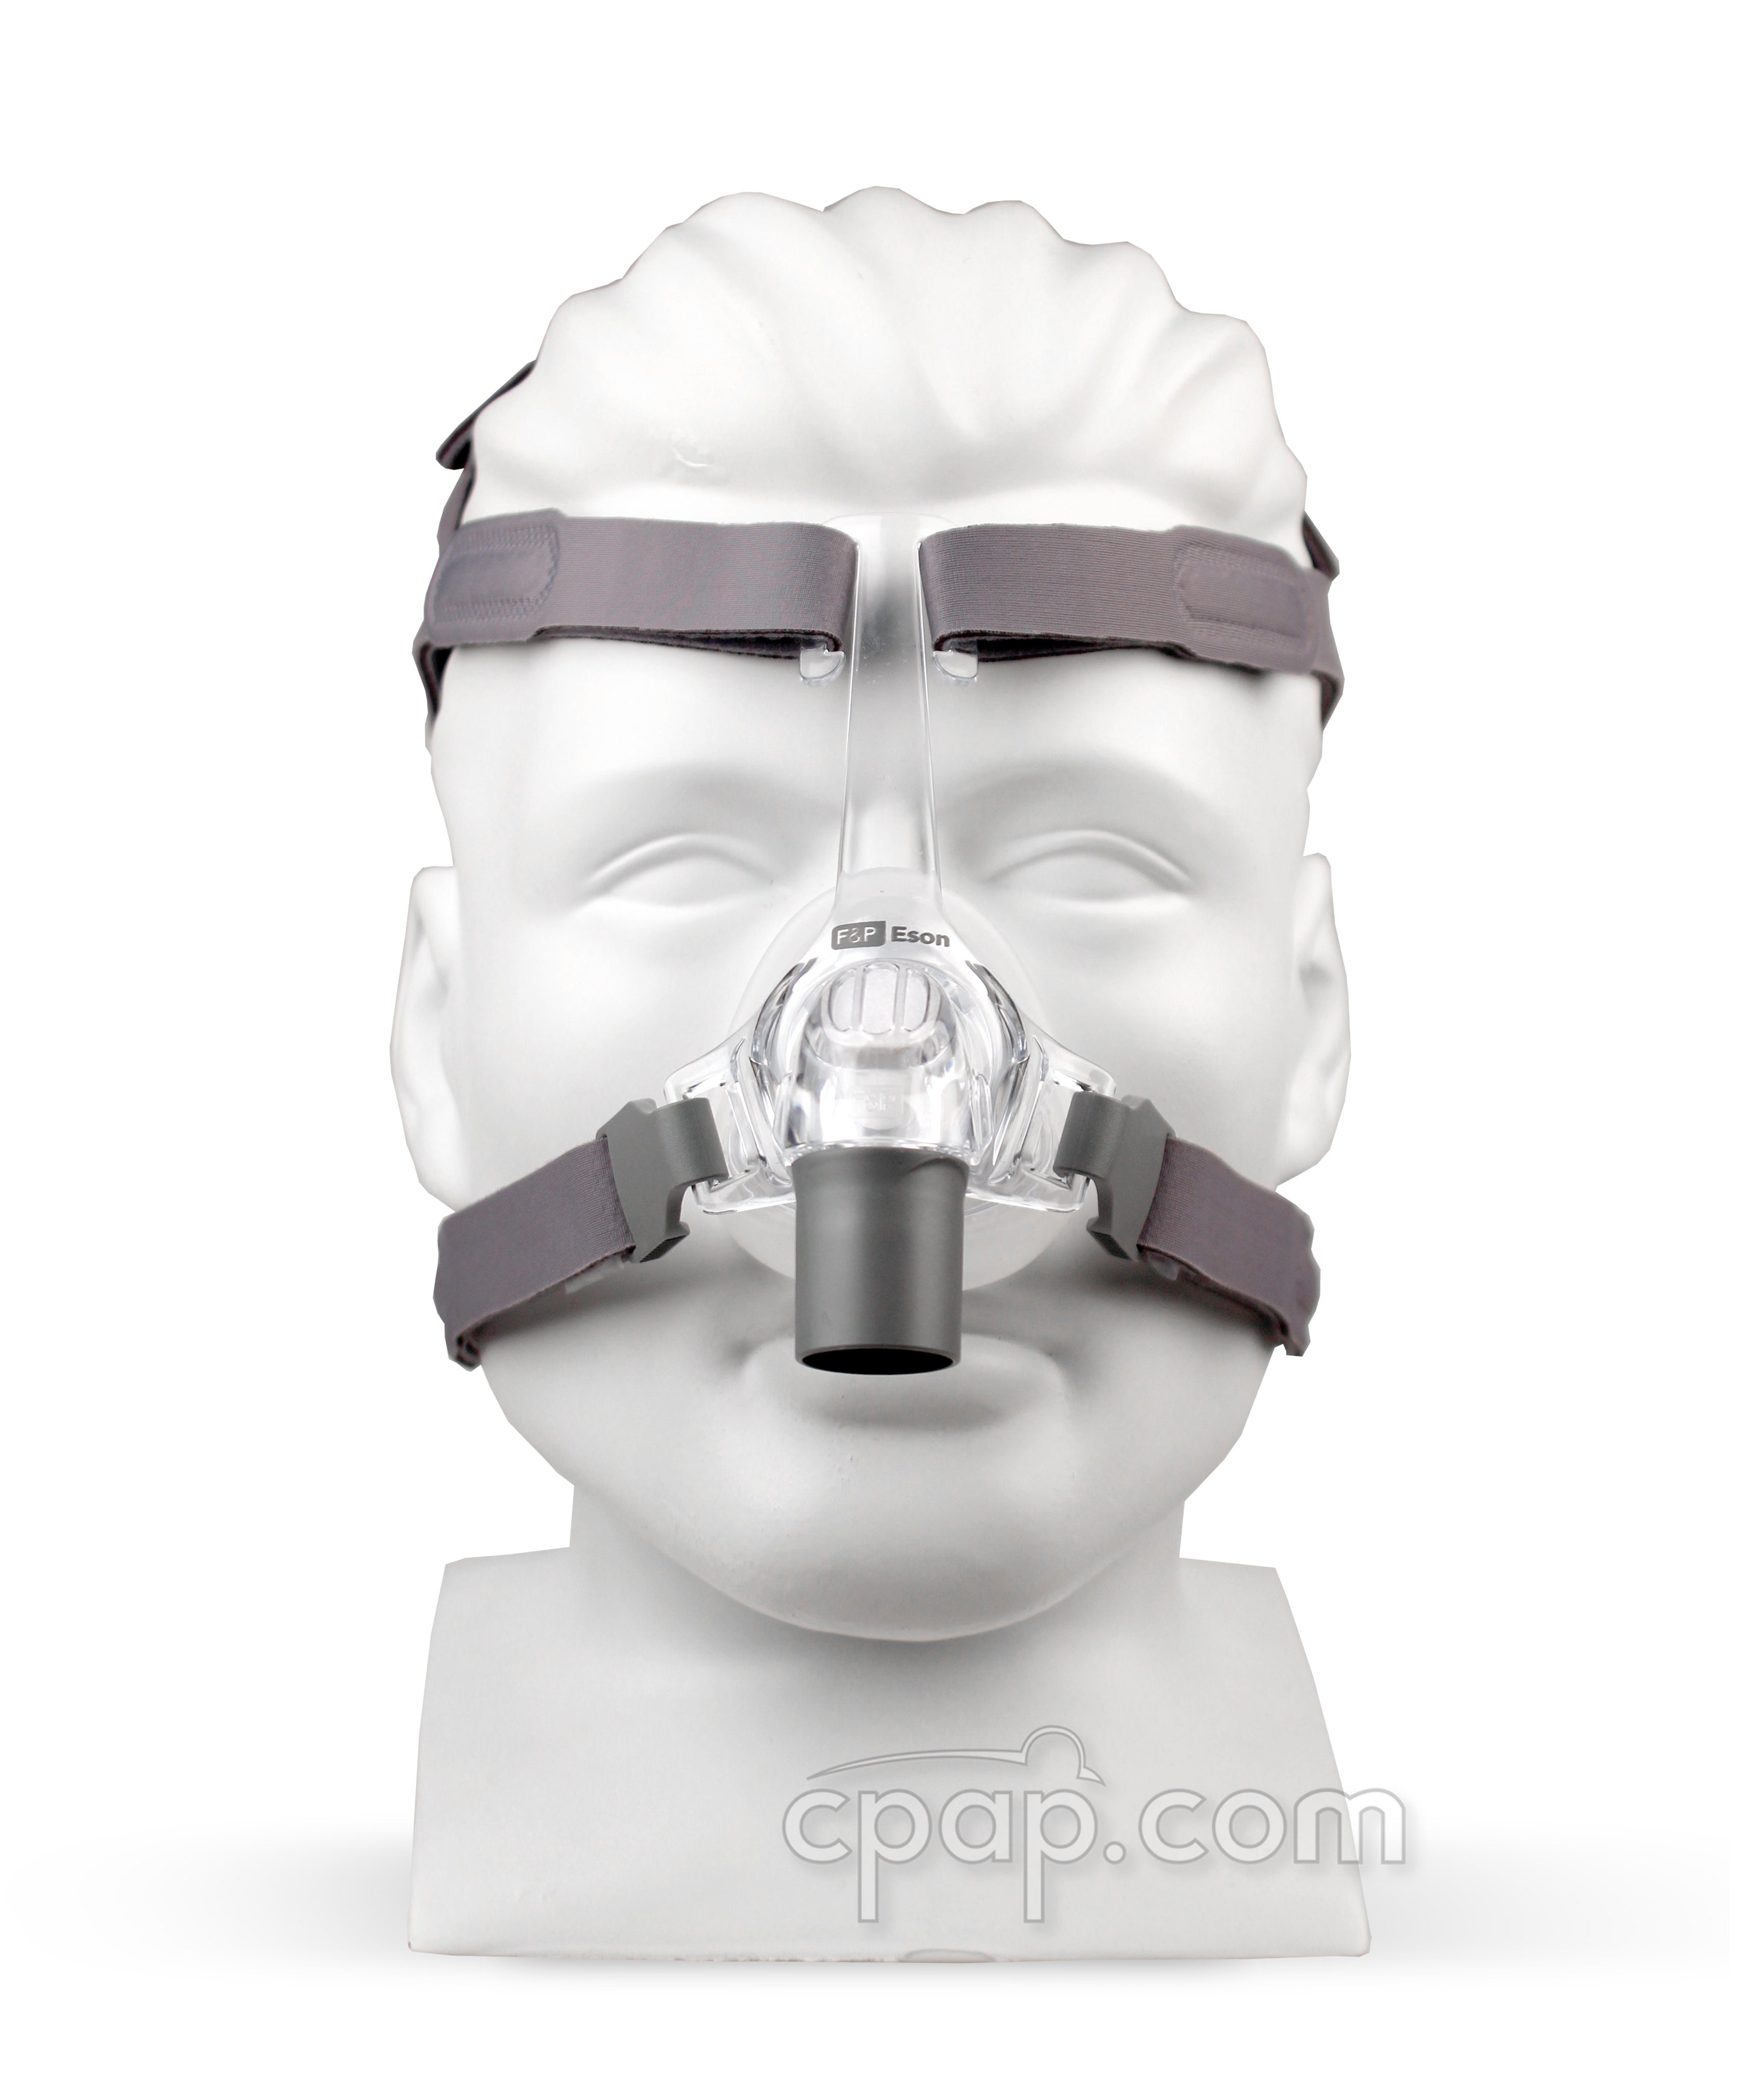 Маска для сипап аппарата. CPAP BIPAP маски. Назальная маска Eson Fisher & Paykel. Носовая сипап (CPAP) маска a, размер l.